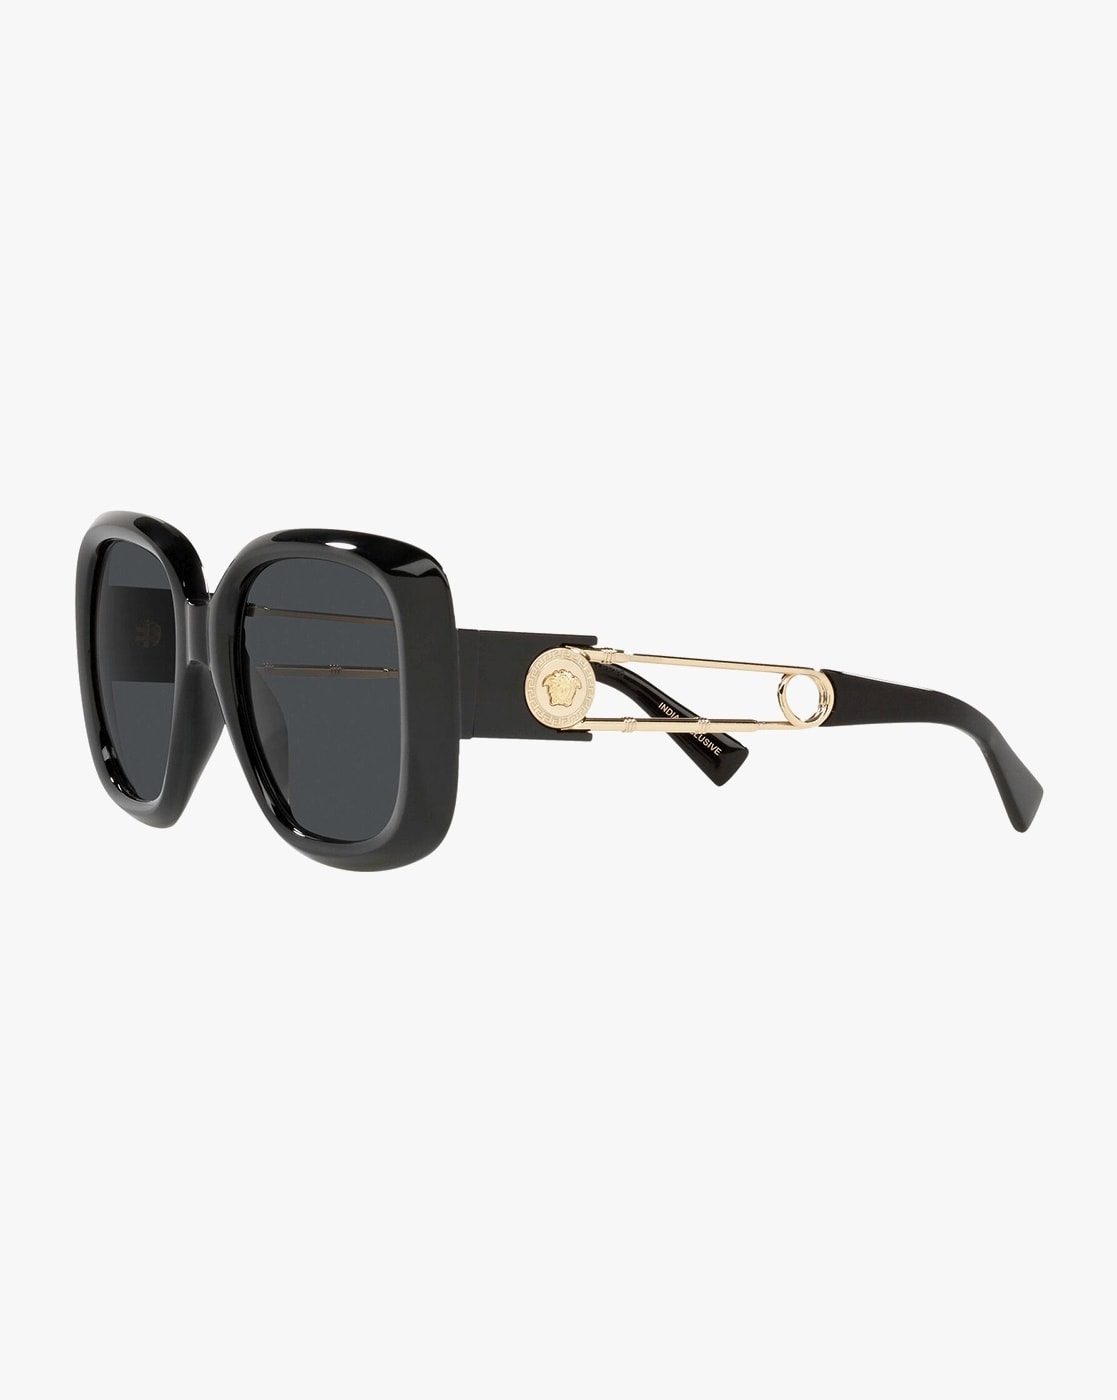 Sunglasses KIM: slender, rectangular-shape | THOMAS SABO